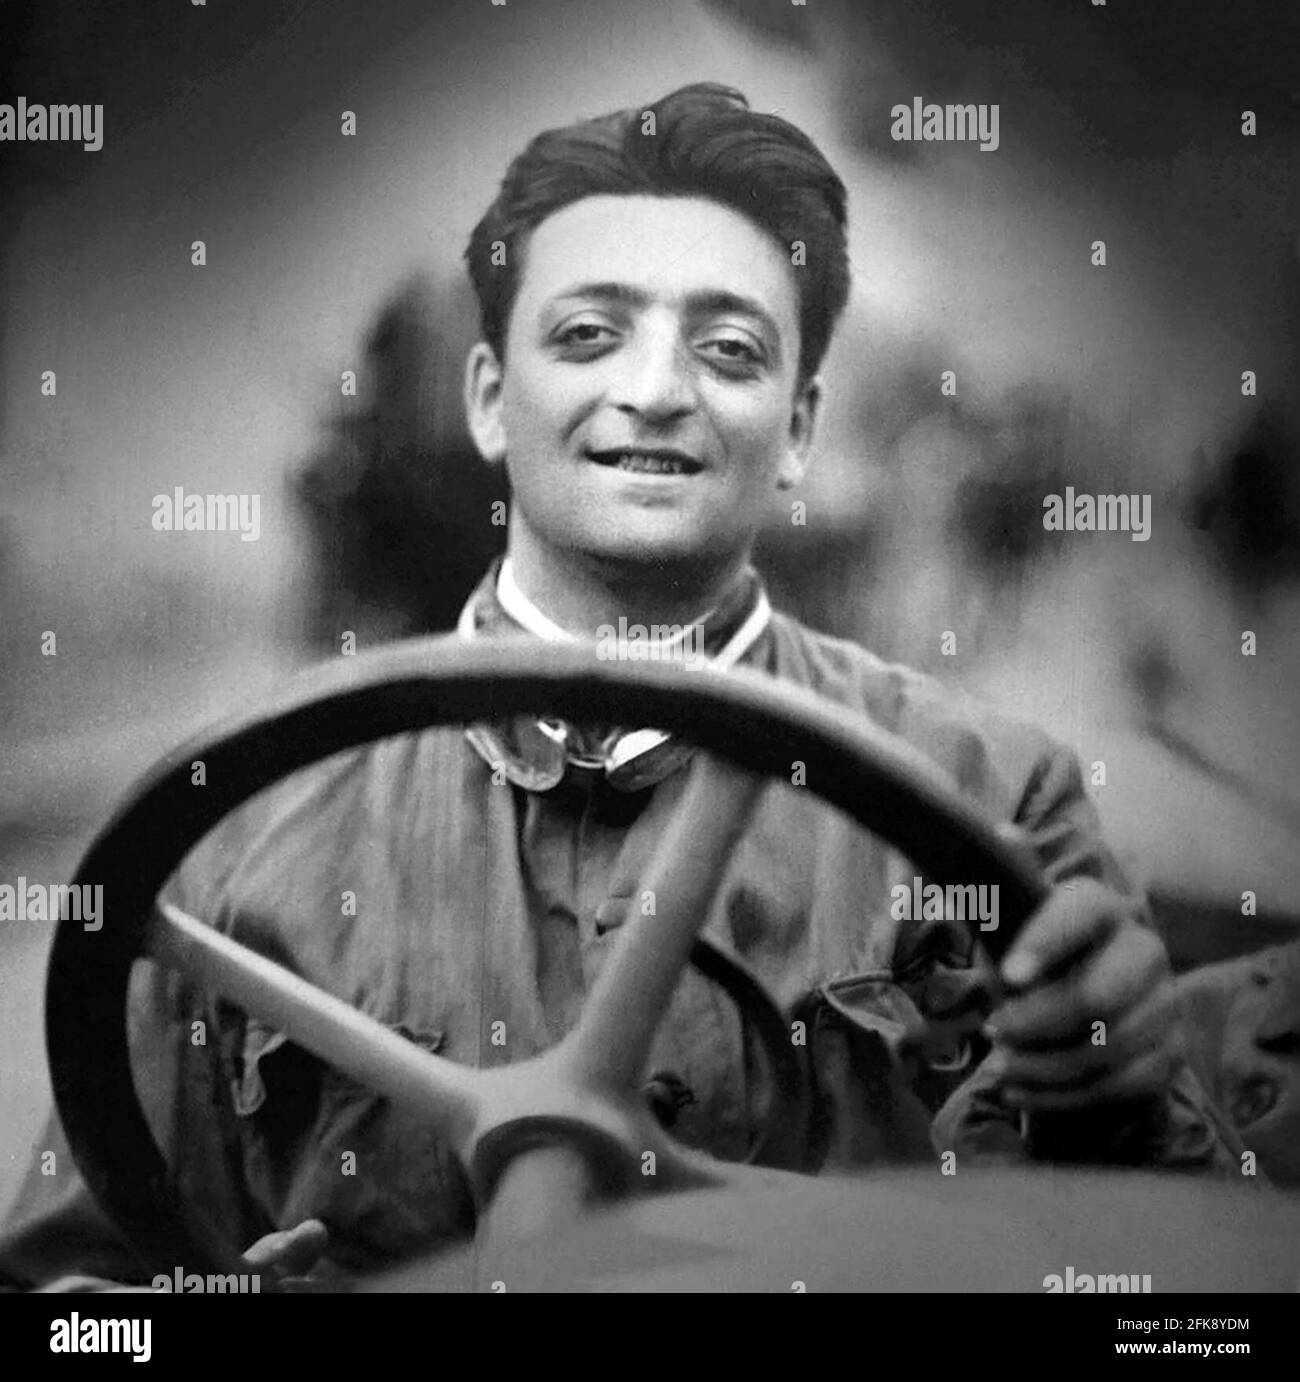 Enzo Ferrari. Portrait du pilote de voiture de course italien et fondateur de Ferrari, Enzo Anselmo Giuseppe Maria Ferrari (1898-1988), dans les années 1920 Banque D'Images